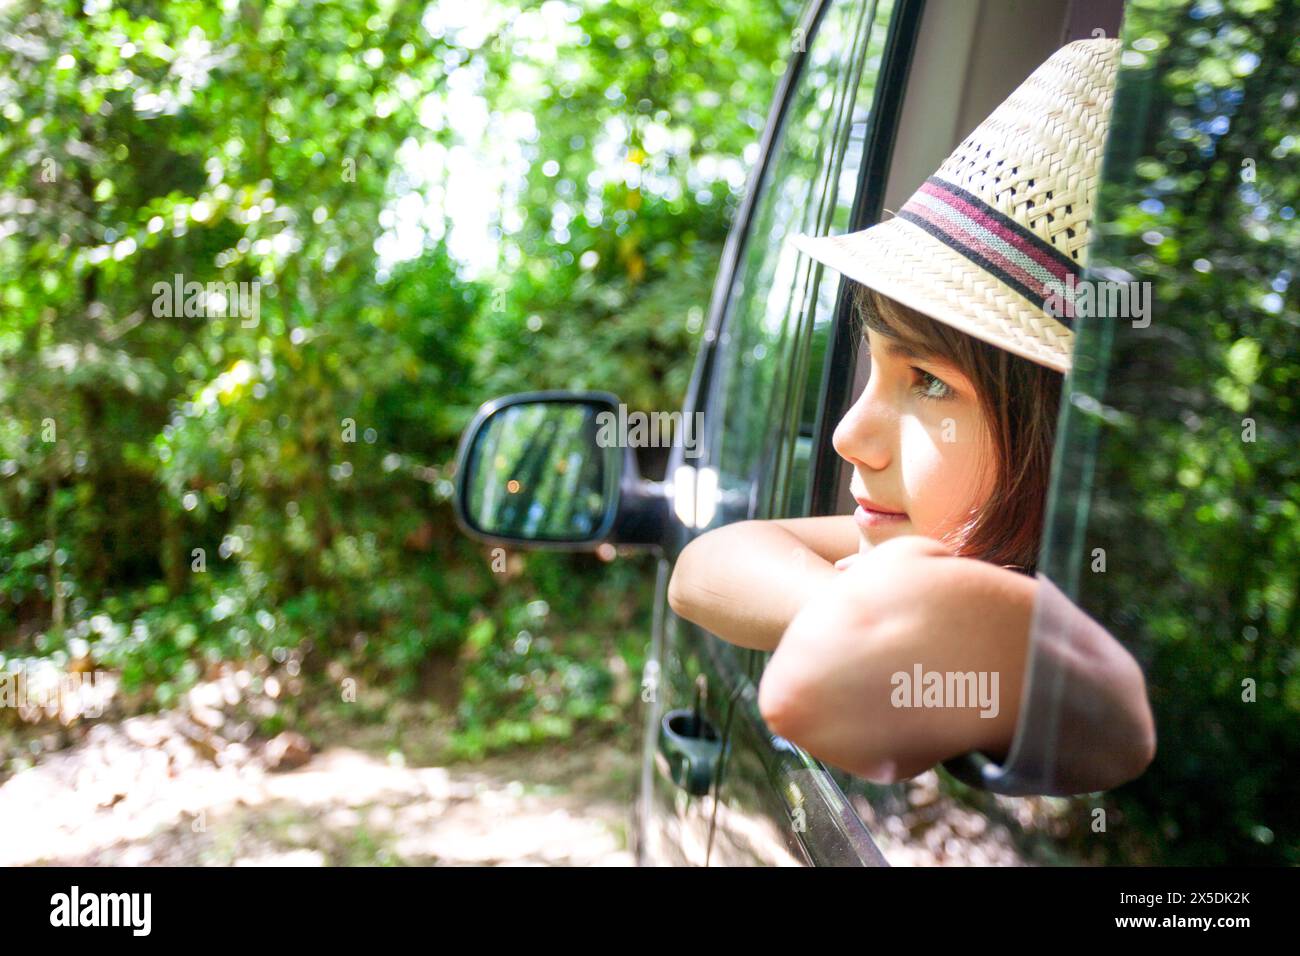 Un jeune garçon regarde par la fenêtre d'une voiture. Il porte un chapeau de paille et a son bras par la fenêtre. La scène est paisible et relaxant, comme le b Banque D'Images